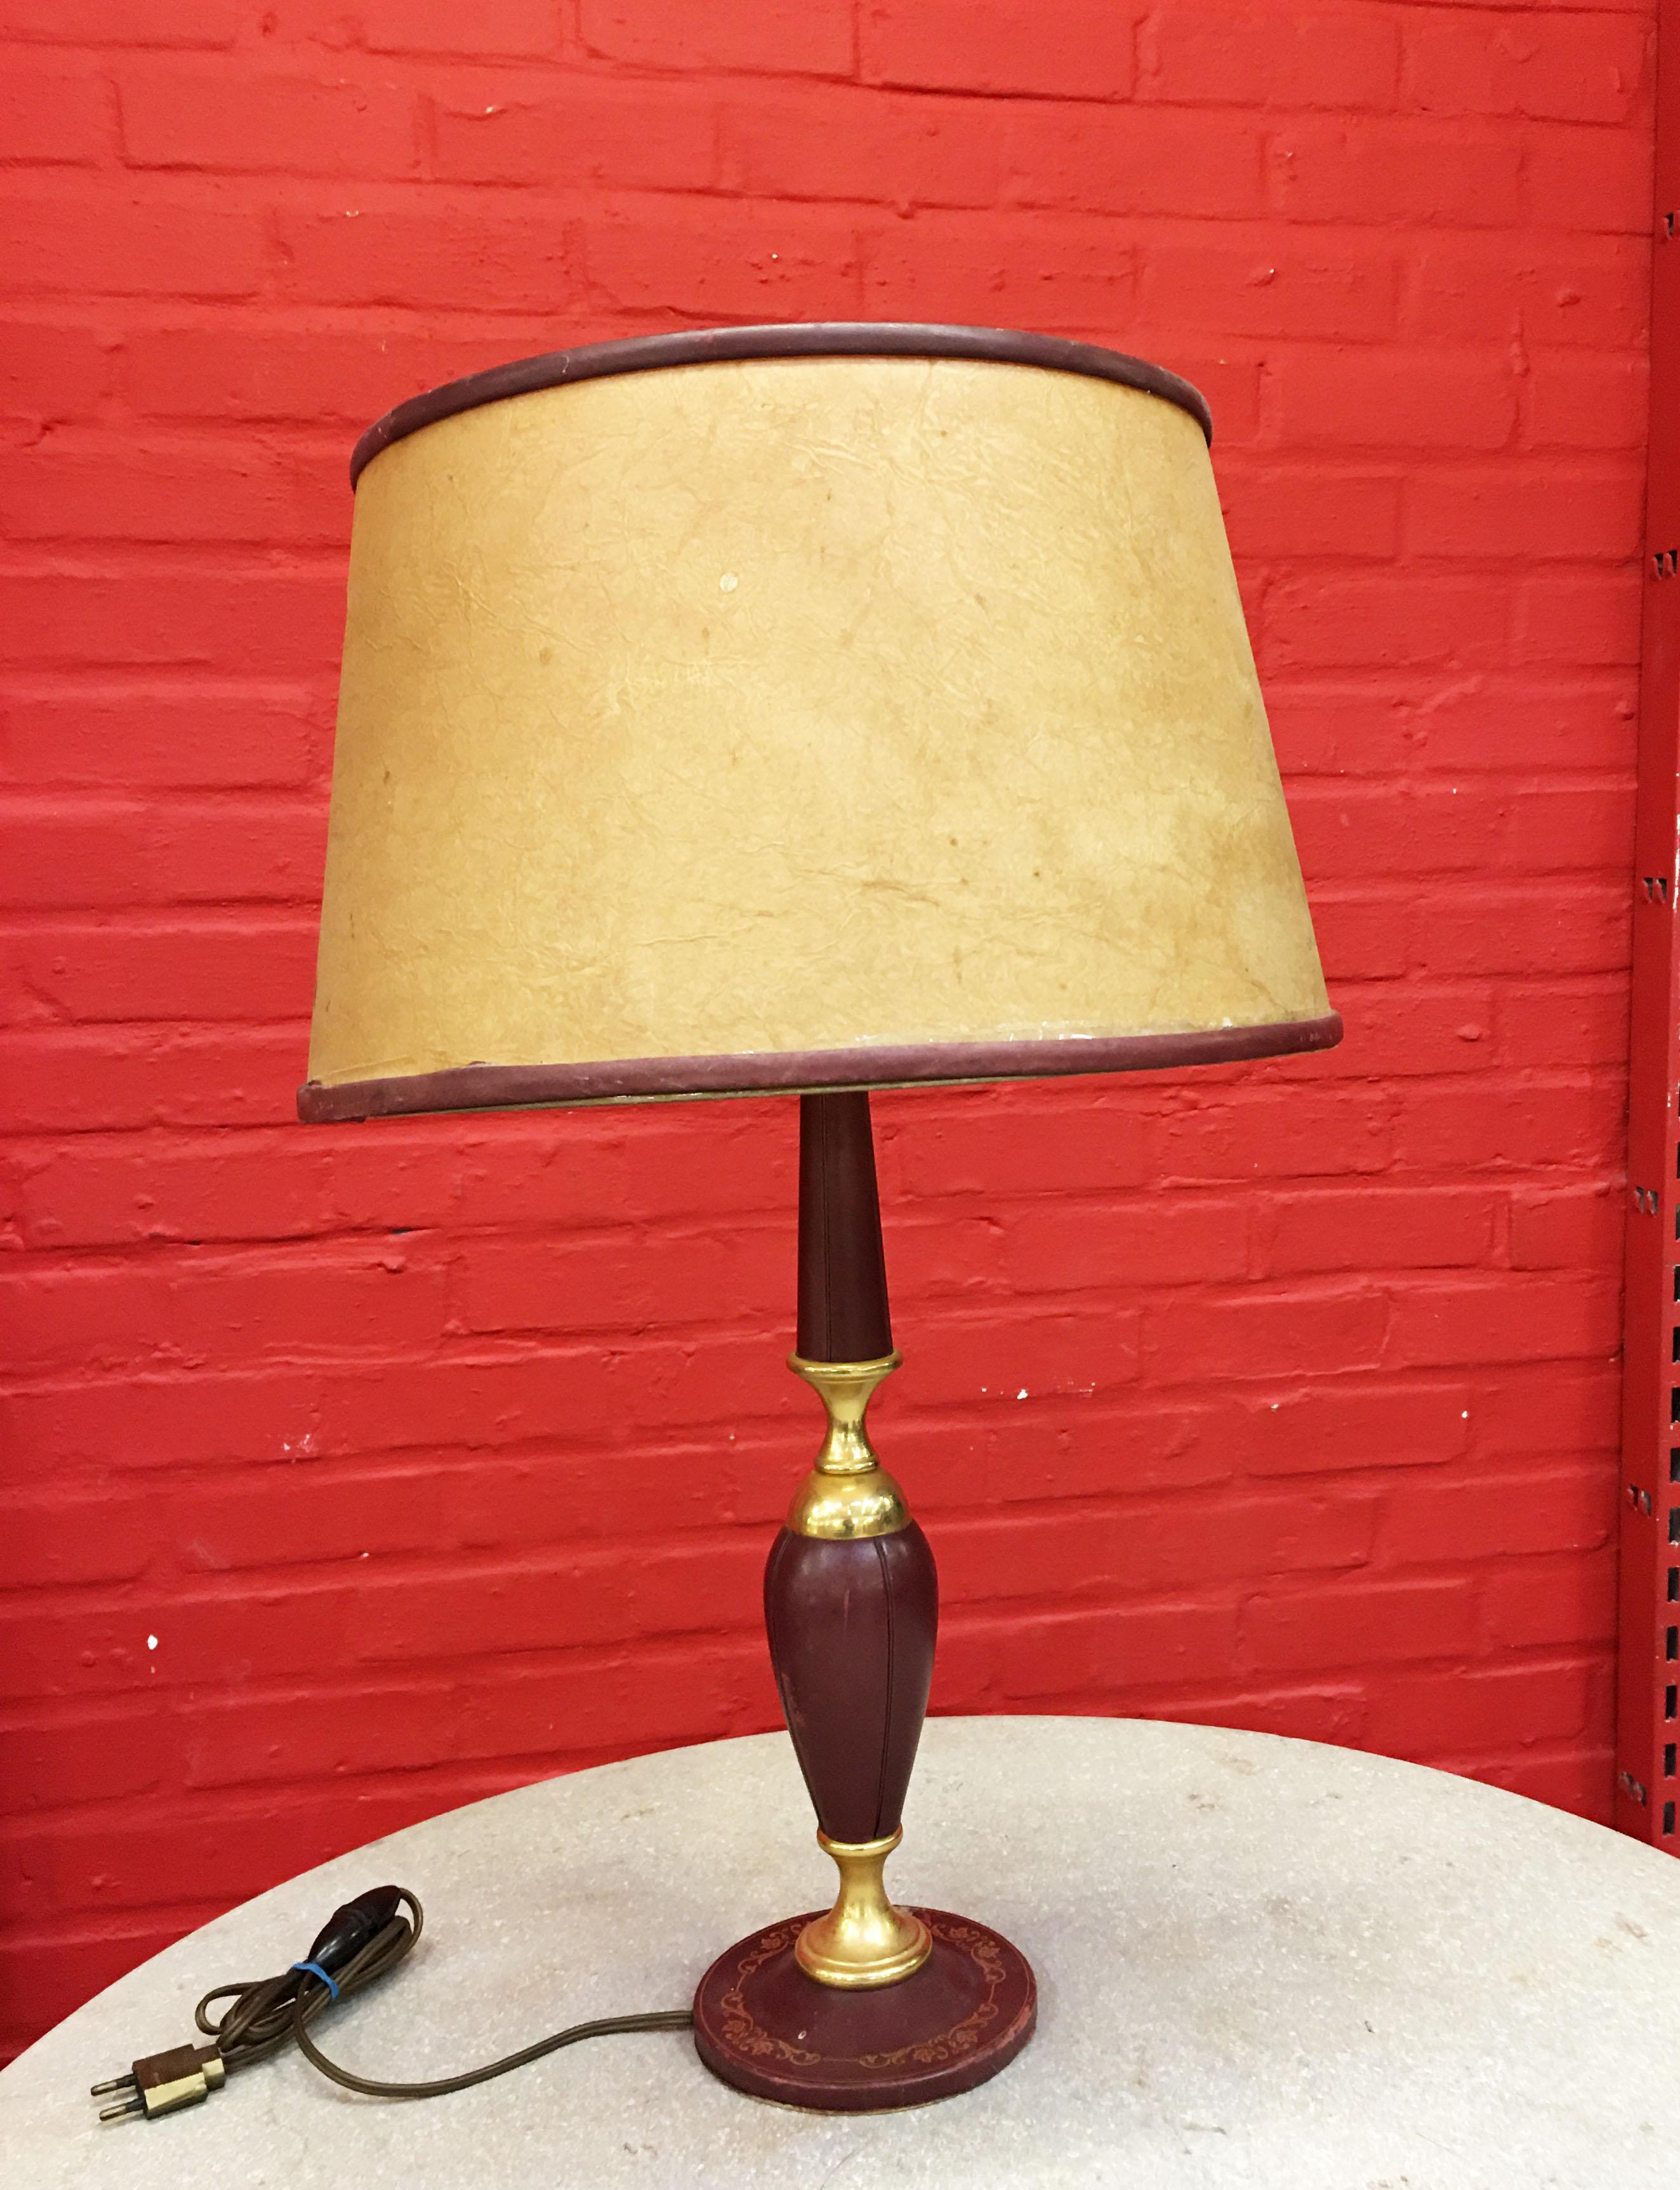 Lampe en cuir et laiton dans le style de Jacques Adnet, vers 1950